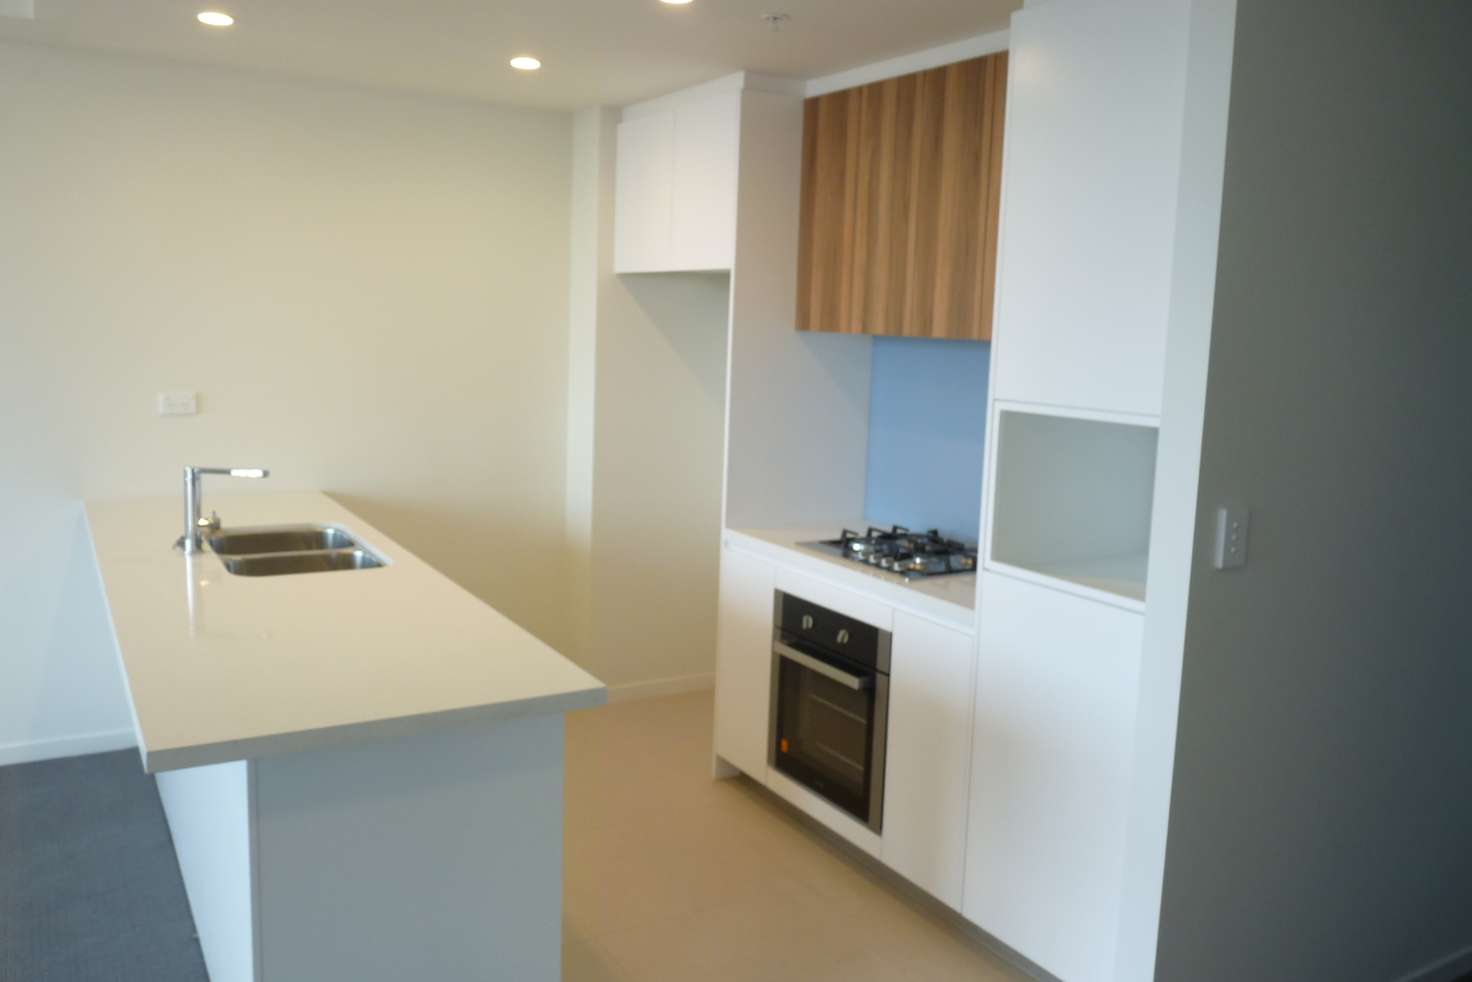 Main view of Homely apartment listing, 201/2 Barratt Street, Hurstville NSW 2220